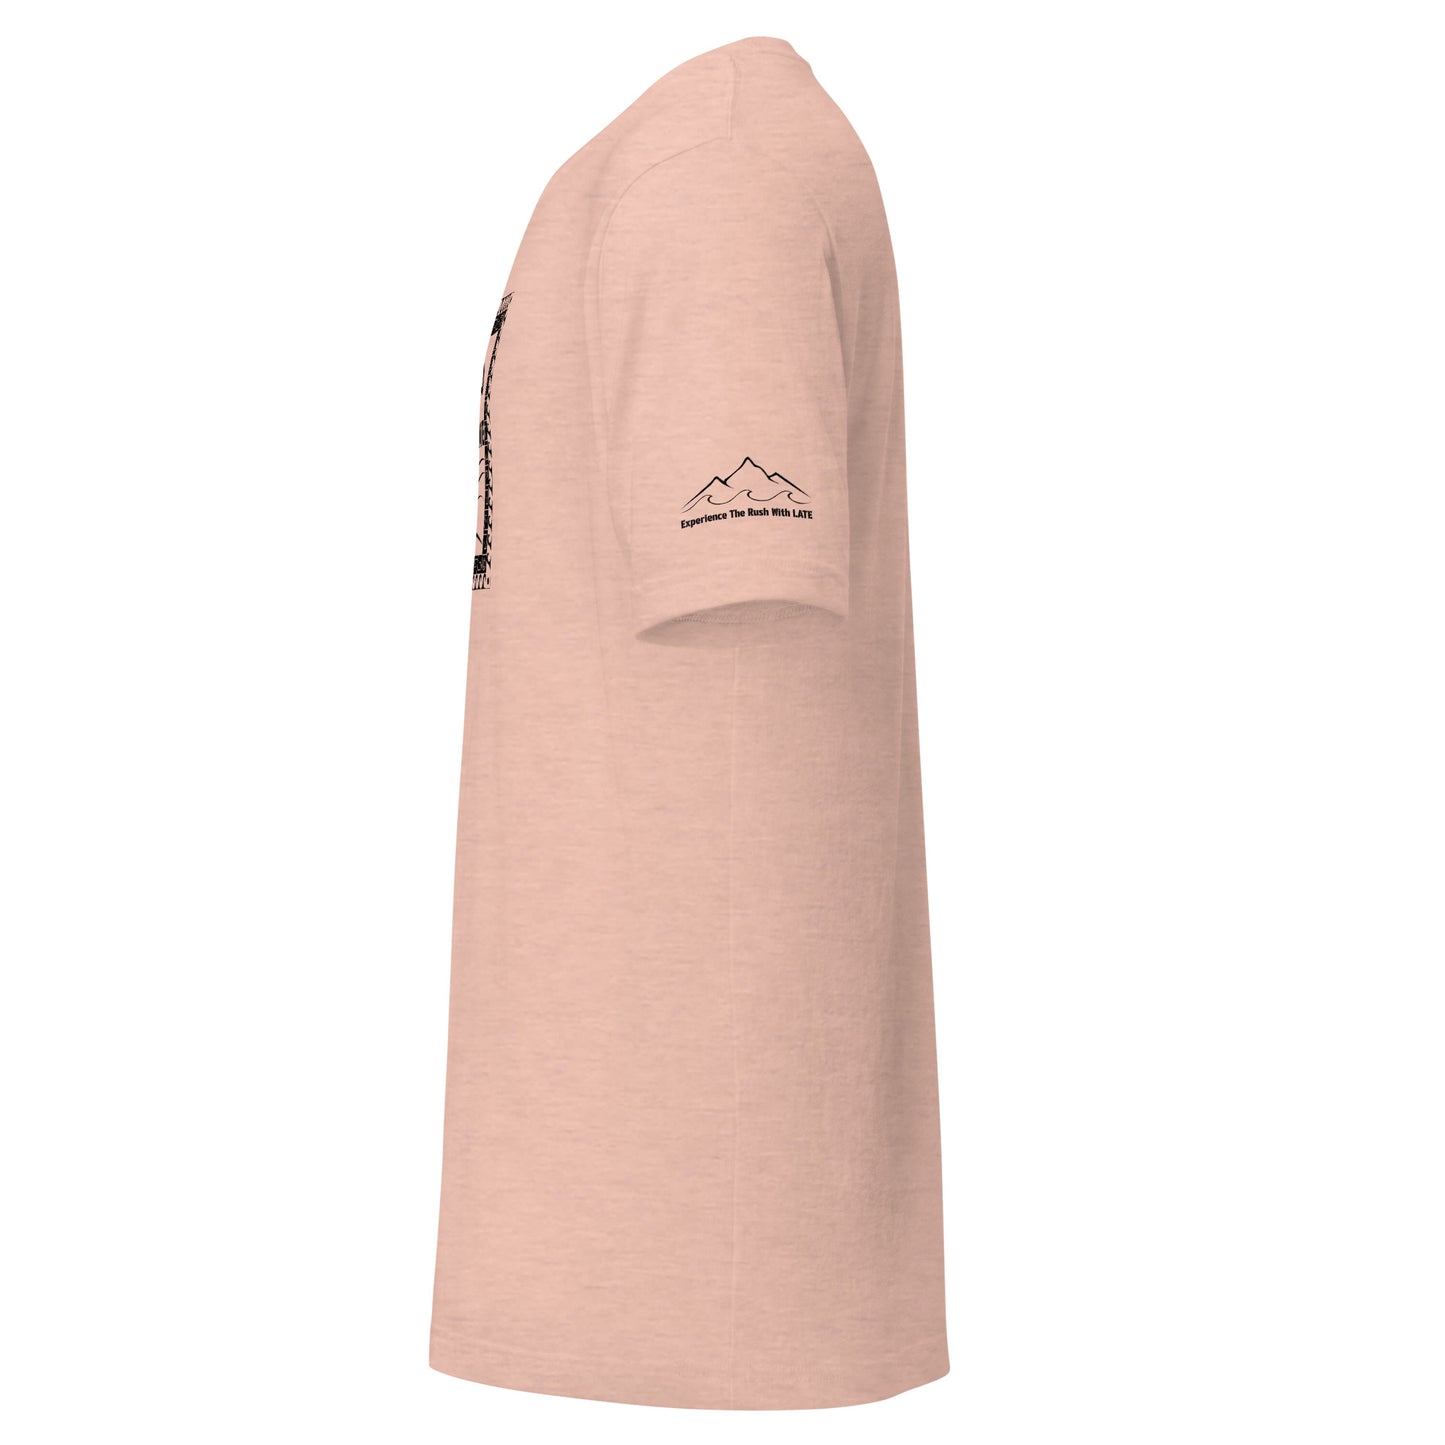 T-Shirt Tricky Wave design manche montagne et vague texte experience the rush et logo Late marque de vêtement de surf skate snowboard tshirt rose